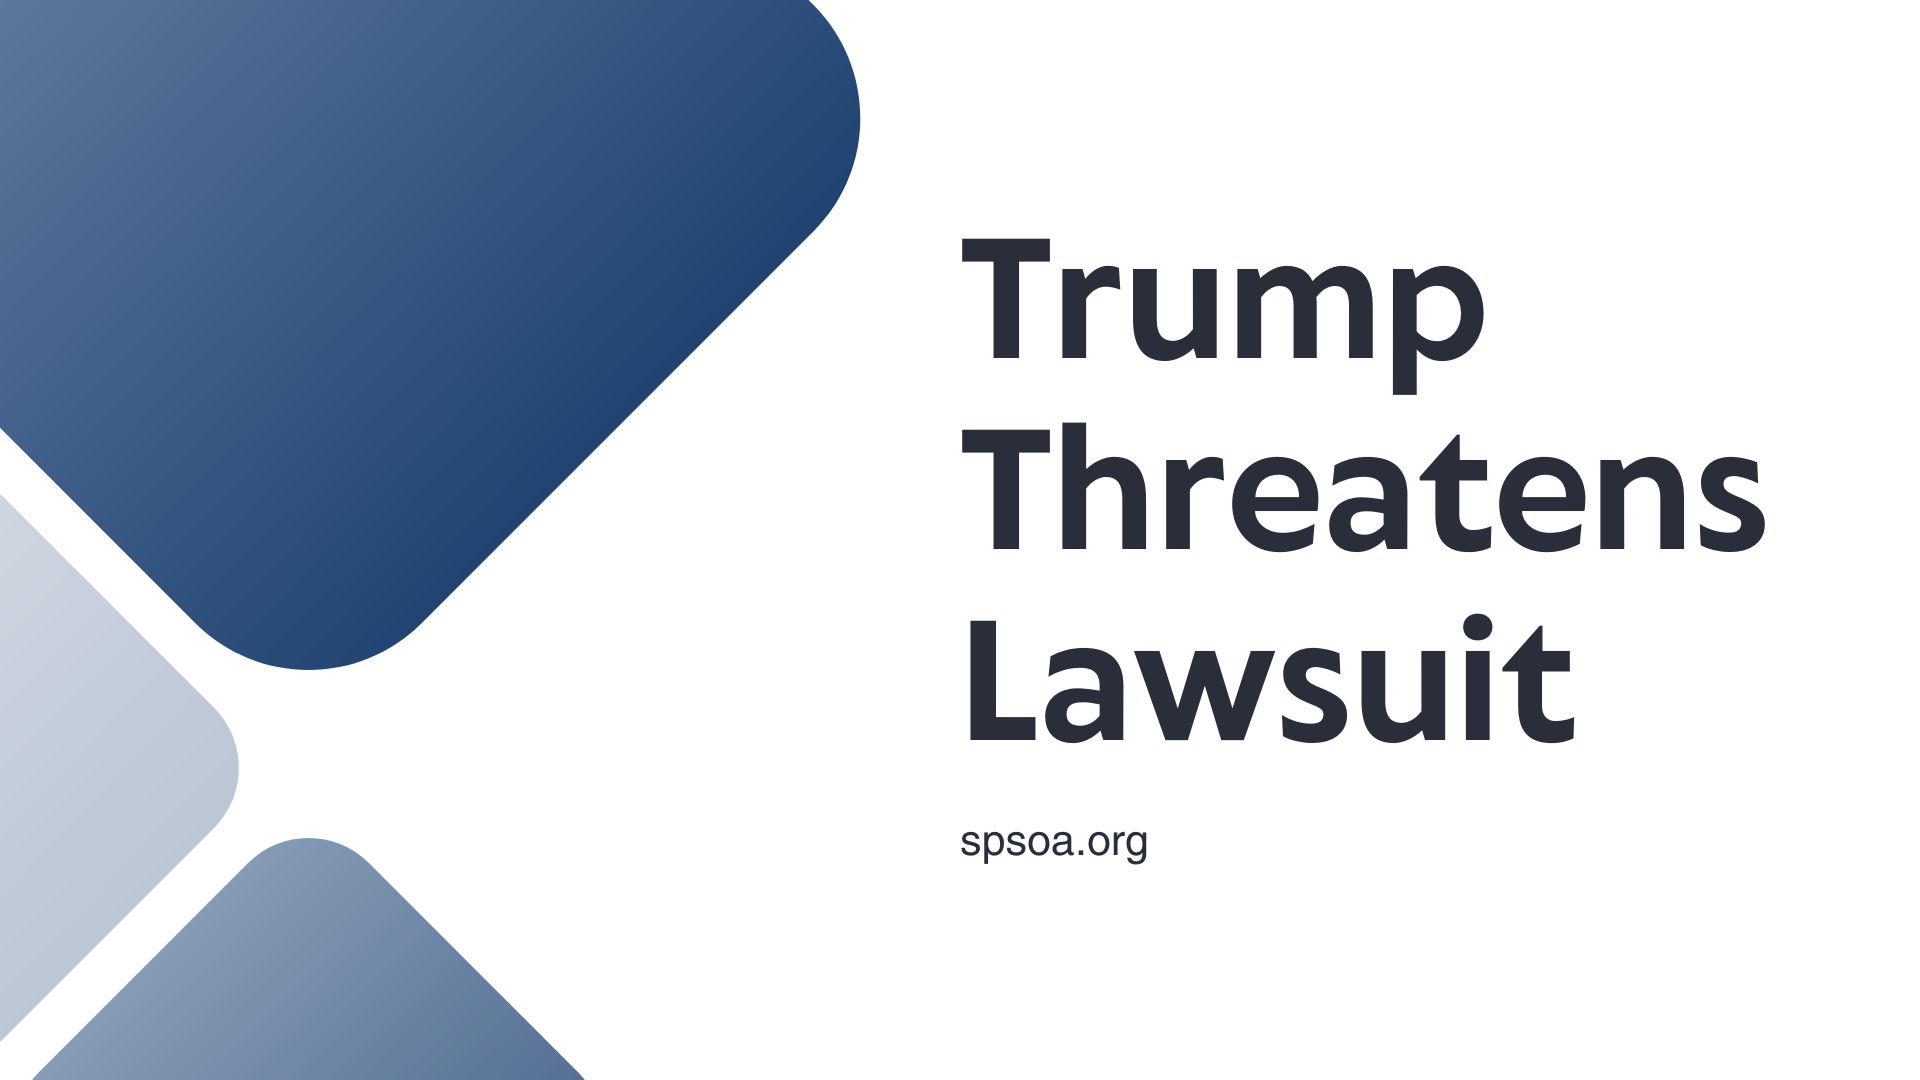 Trump threatens lawsuit